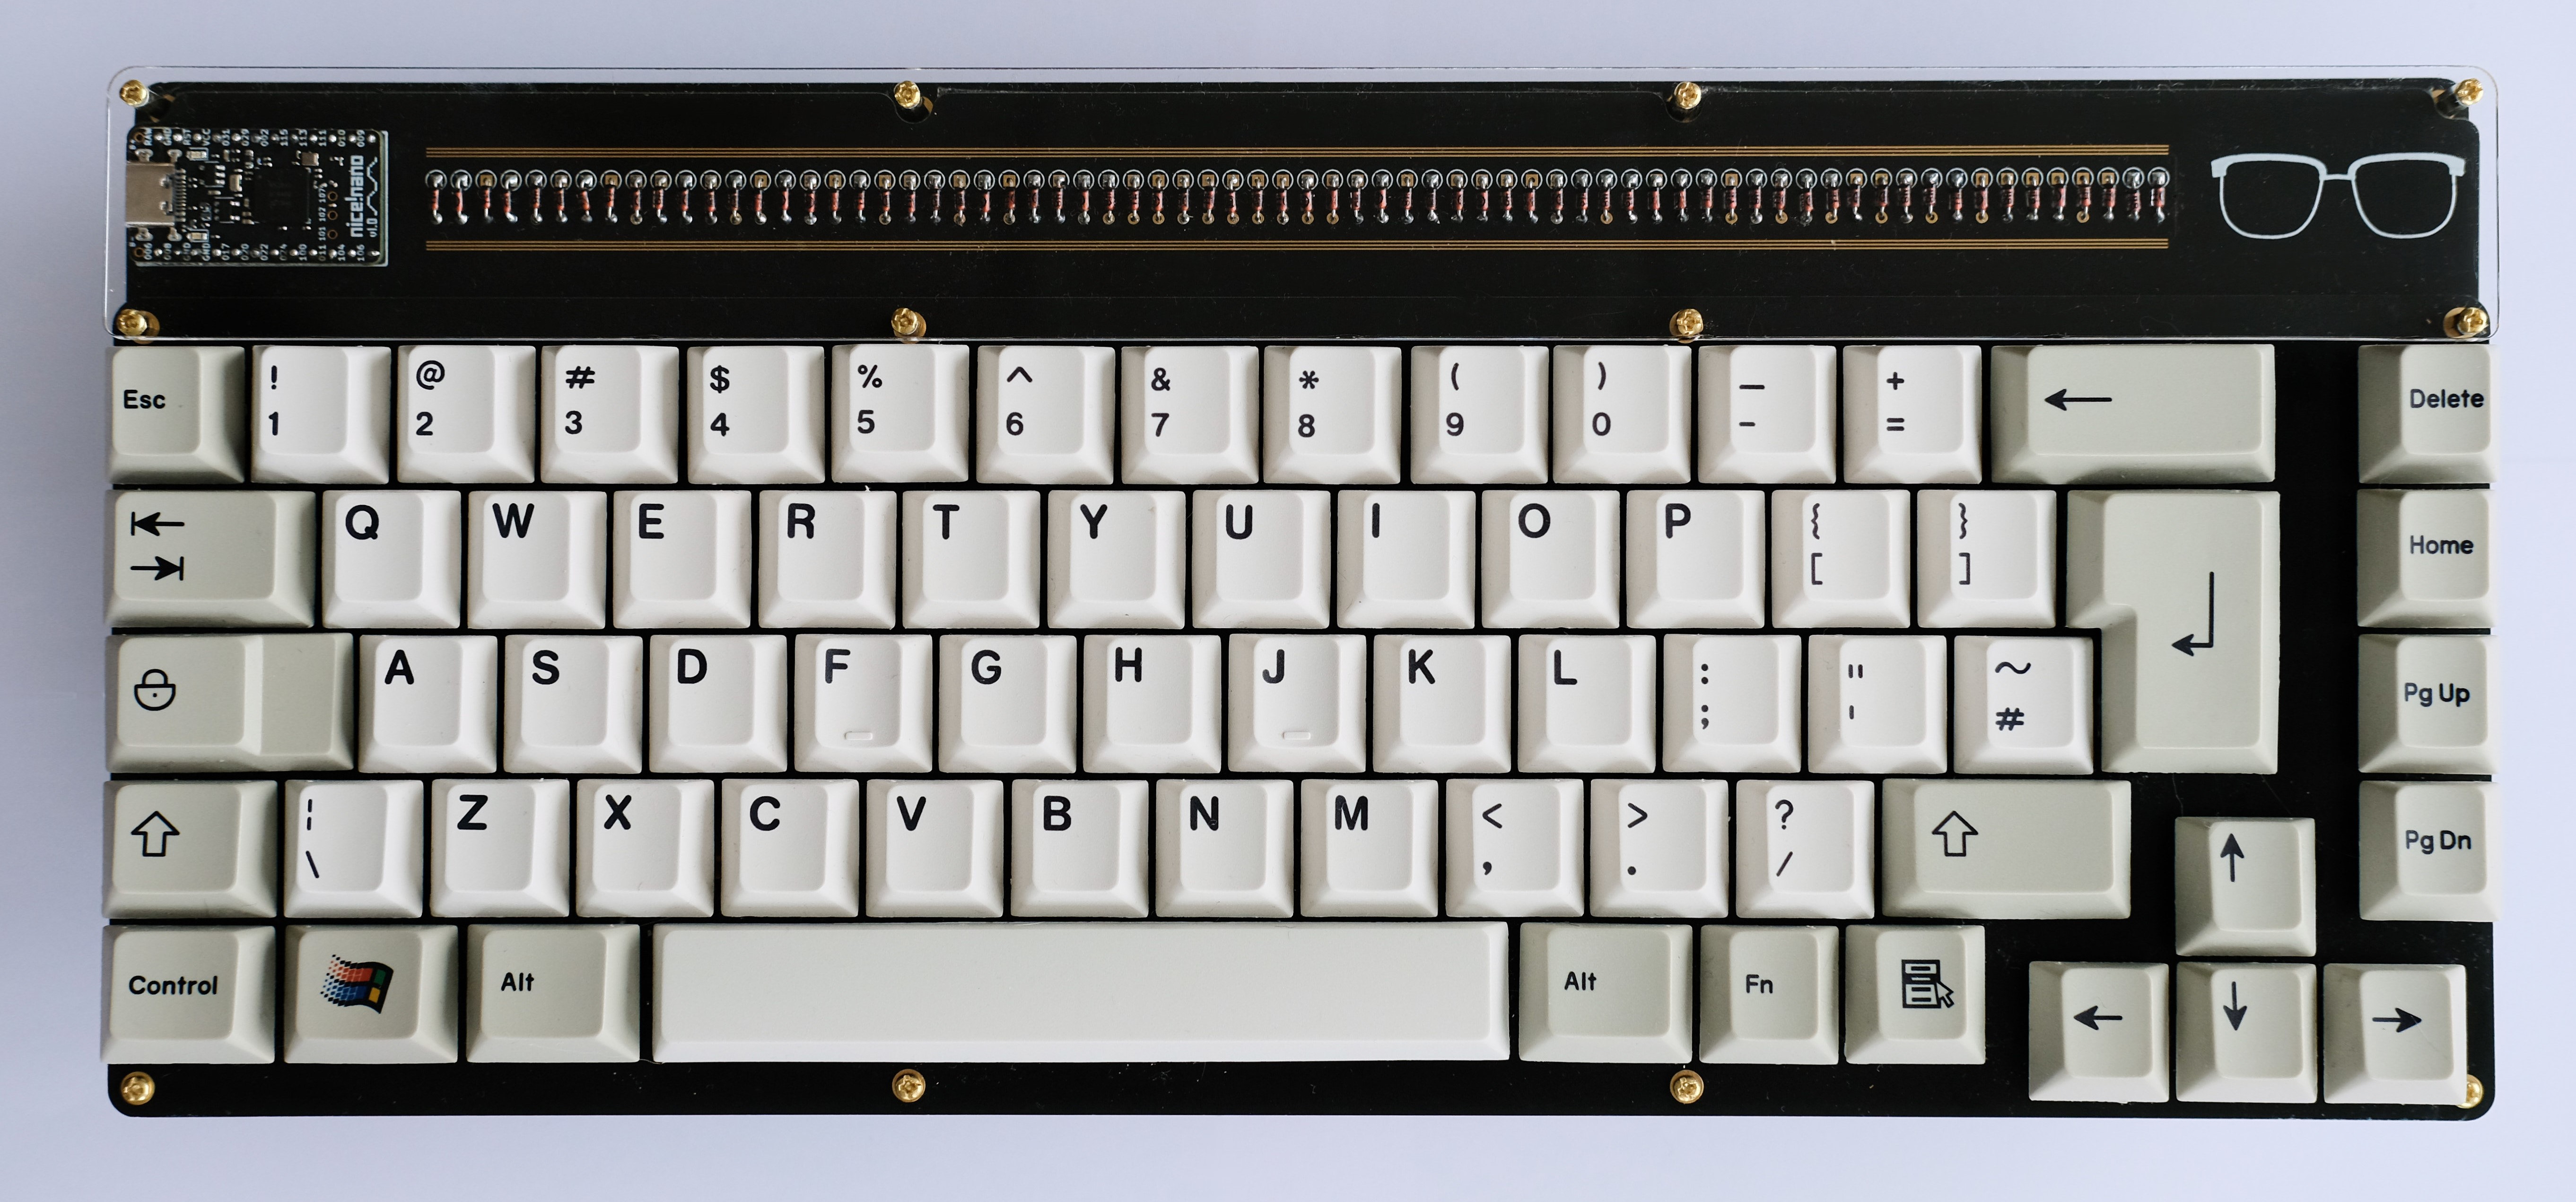 The KBIC65 mechanical keyboard